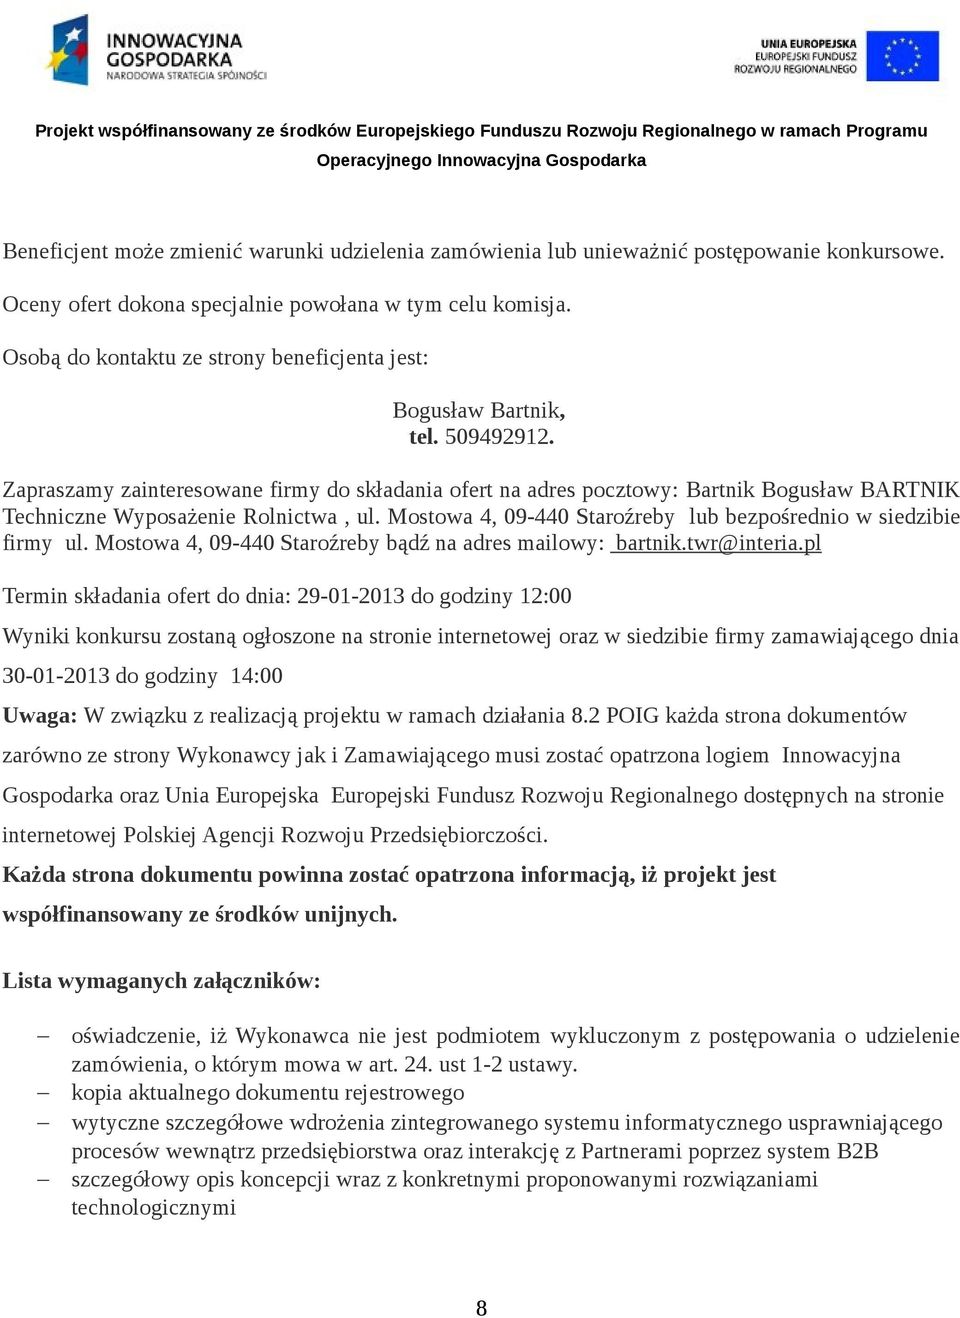 Zapraszamy zainteresowane firmy do składania ofert na adres pocztowy: Bartnik Bogusław BARTNIK Techniczne Wyposażenie Rolnictwa, ul. Mostowa 4, 09-440 Staroźreby lub bezpośrednio w siedzibie firmy ul.